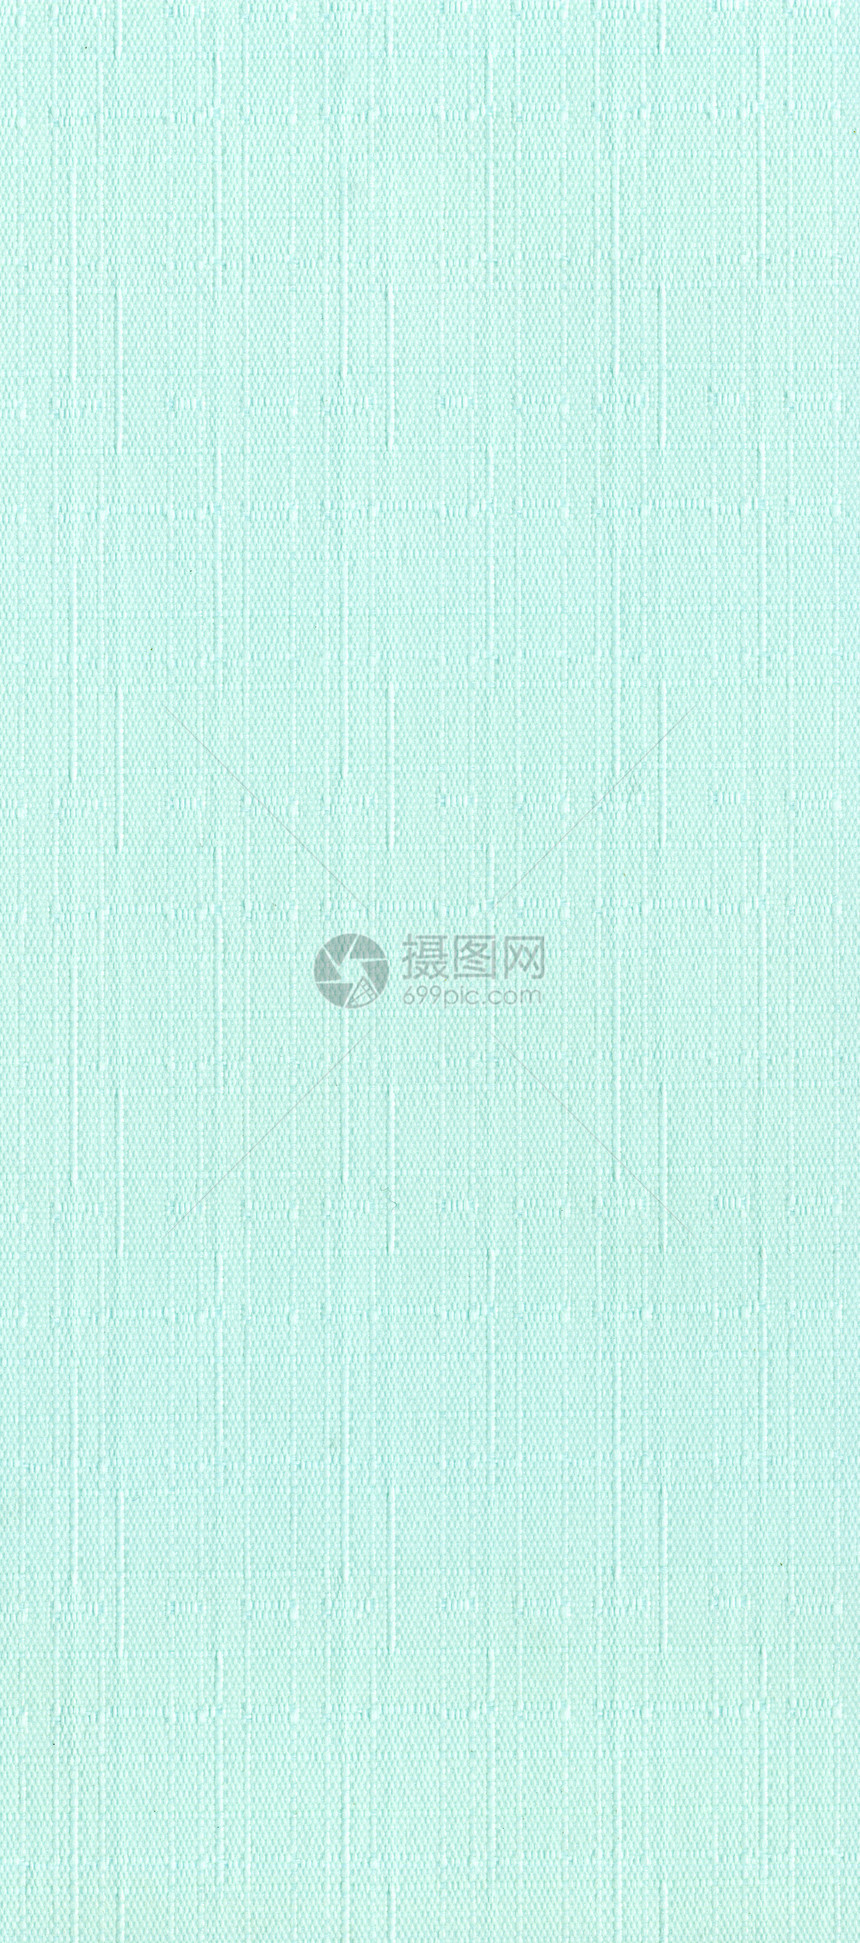 绿色织物质地帆布布料抹布麻布编织亚麻纺织品纤维解雇折痕图片